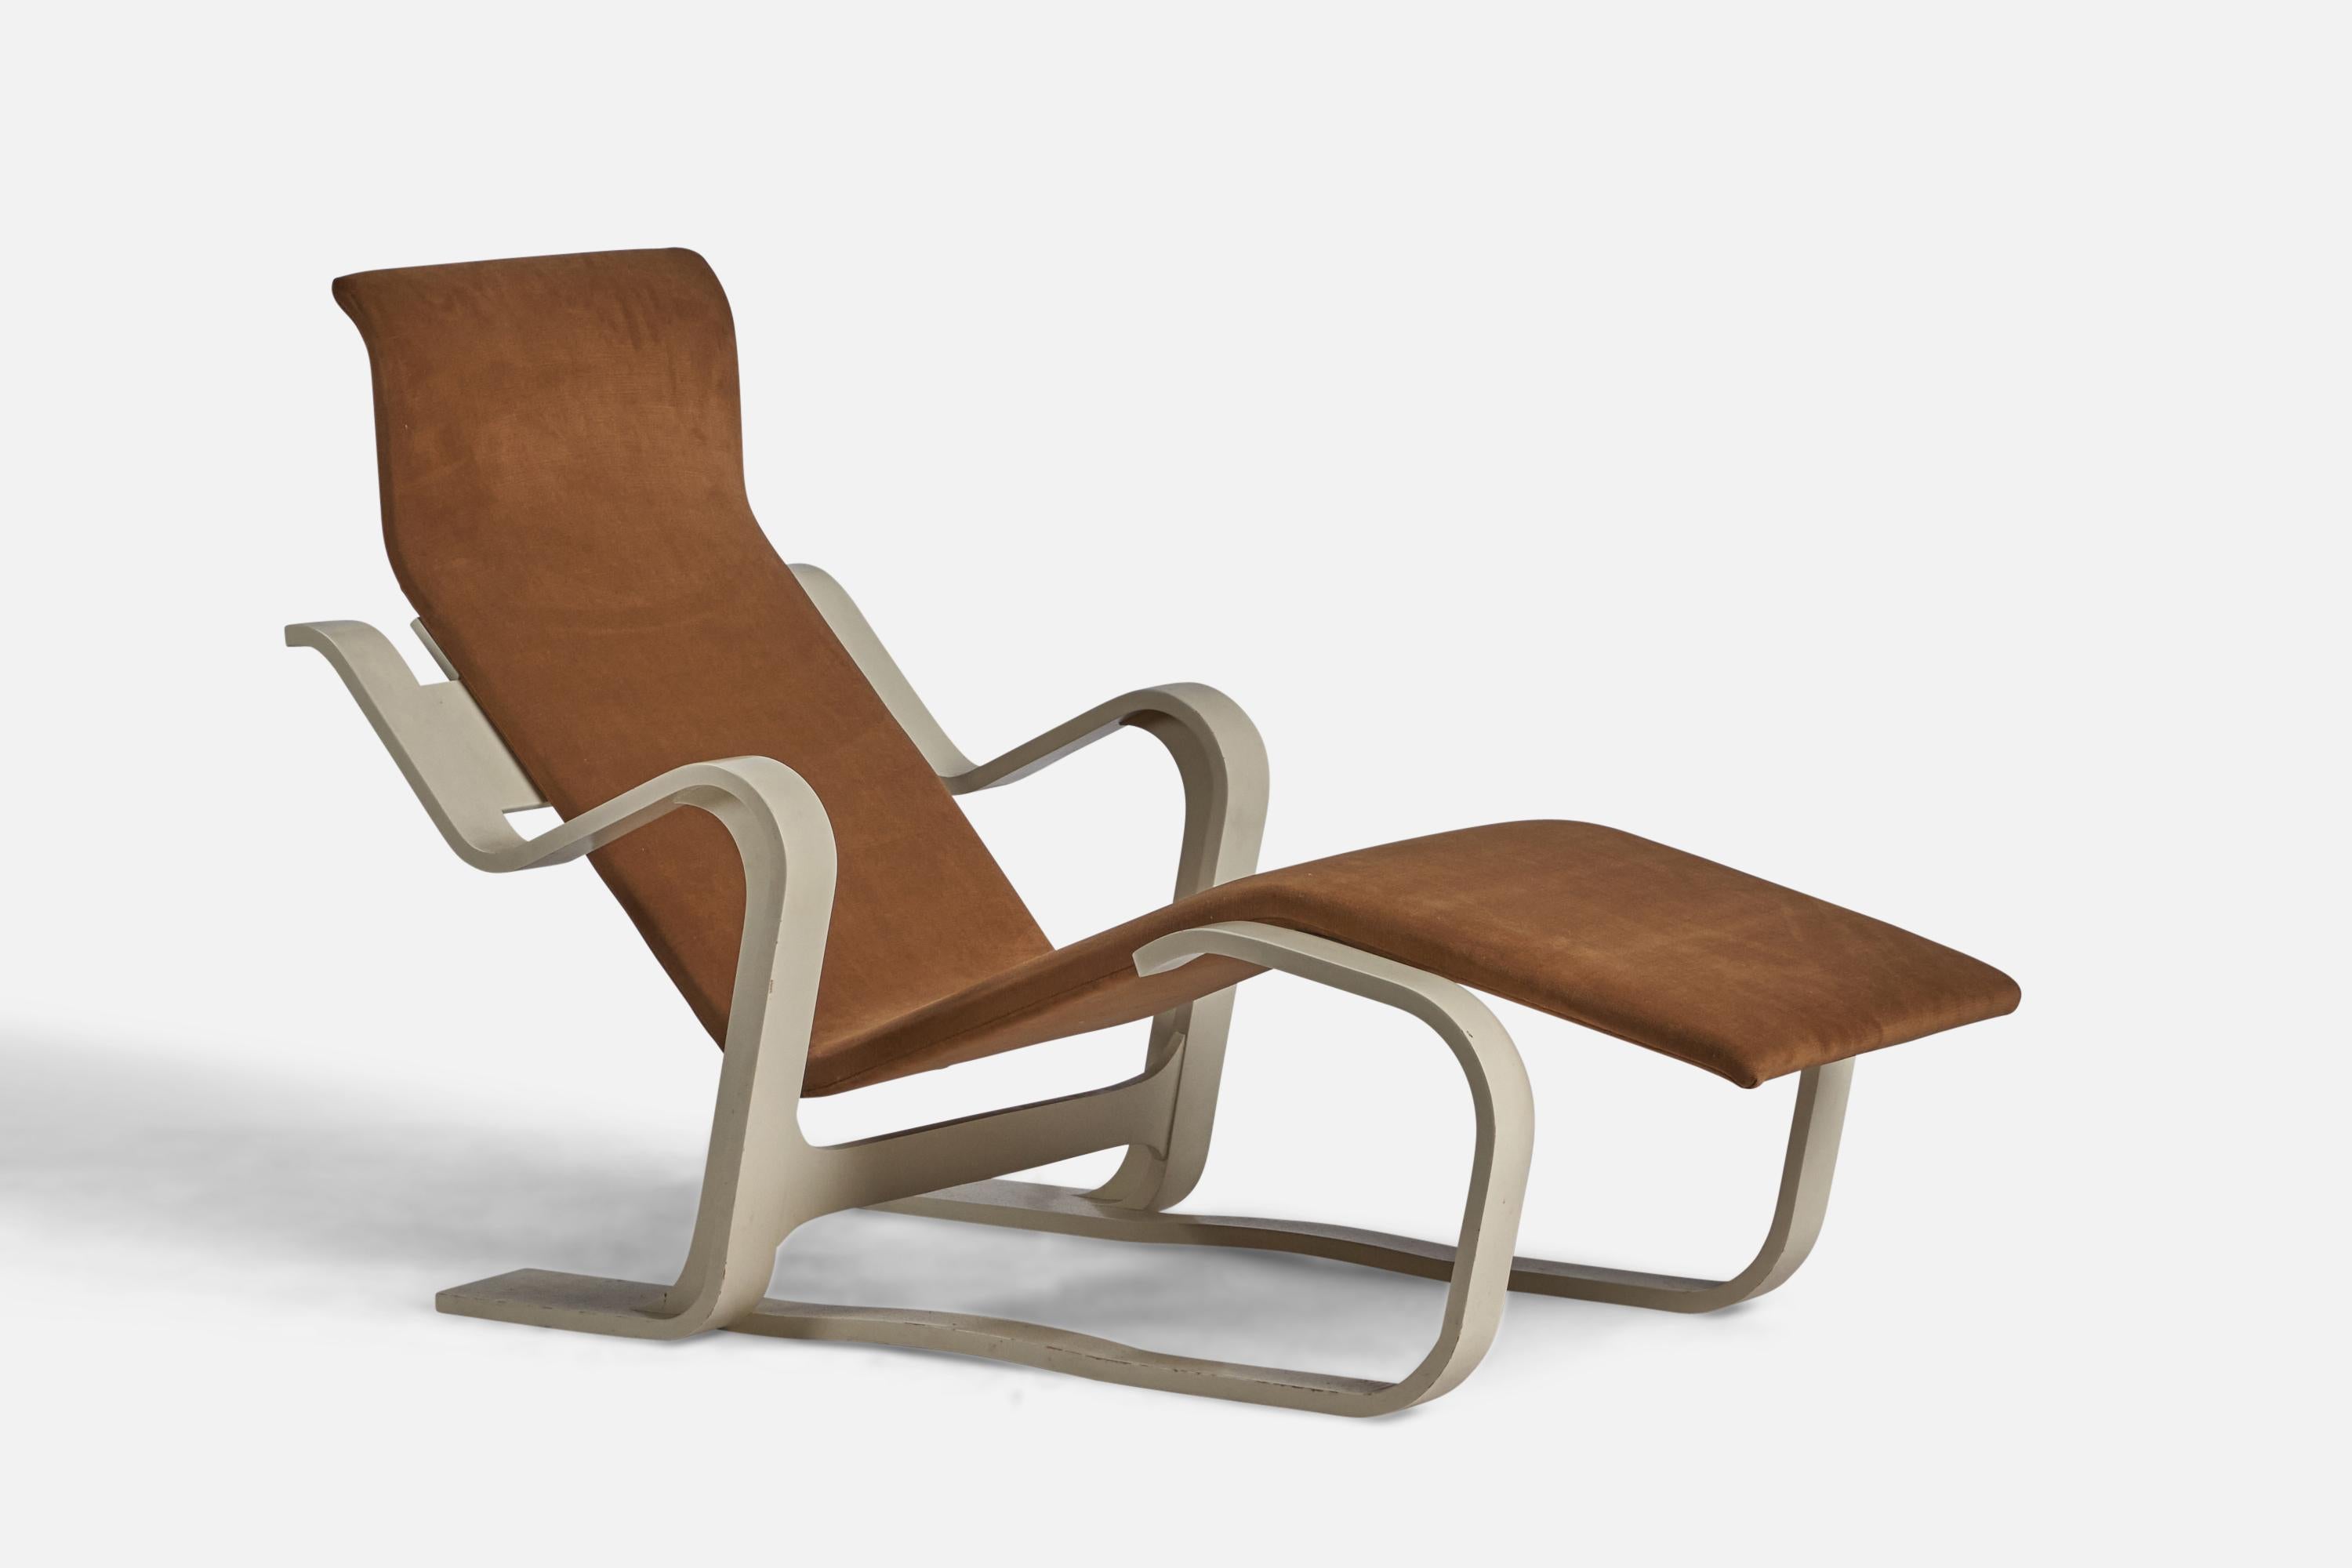 Chaise longue en bois laqué blanc et tissu de velours marron, conçue par Marcel Breuer et produite par Knoll International, c.C. 1960.
Hauteur du siège : 8.75